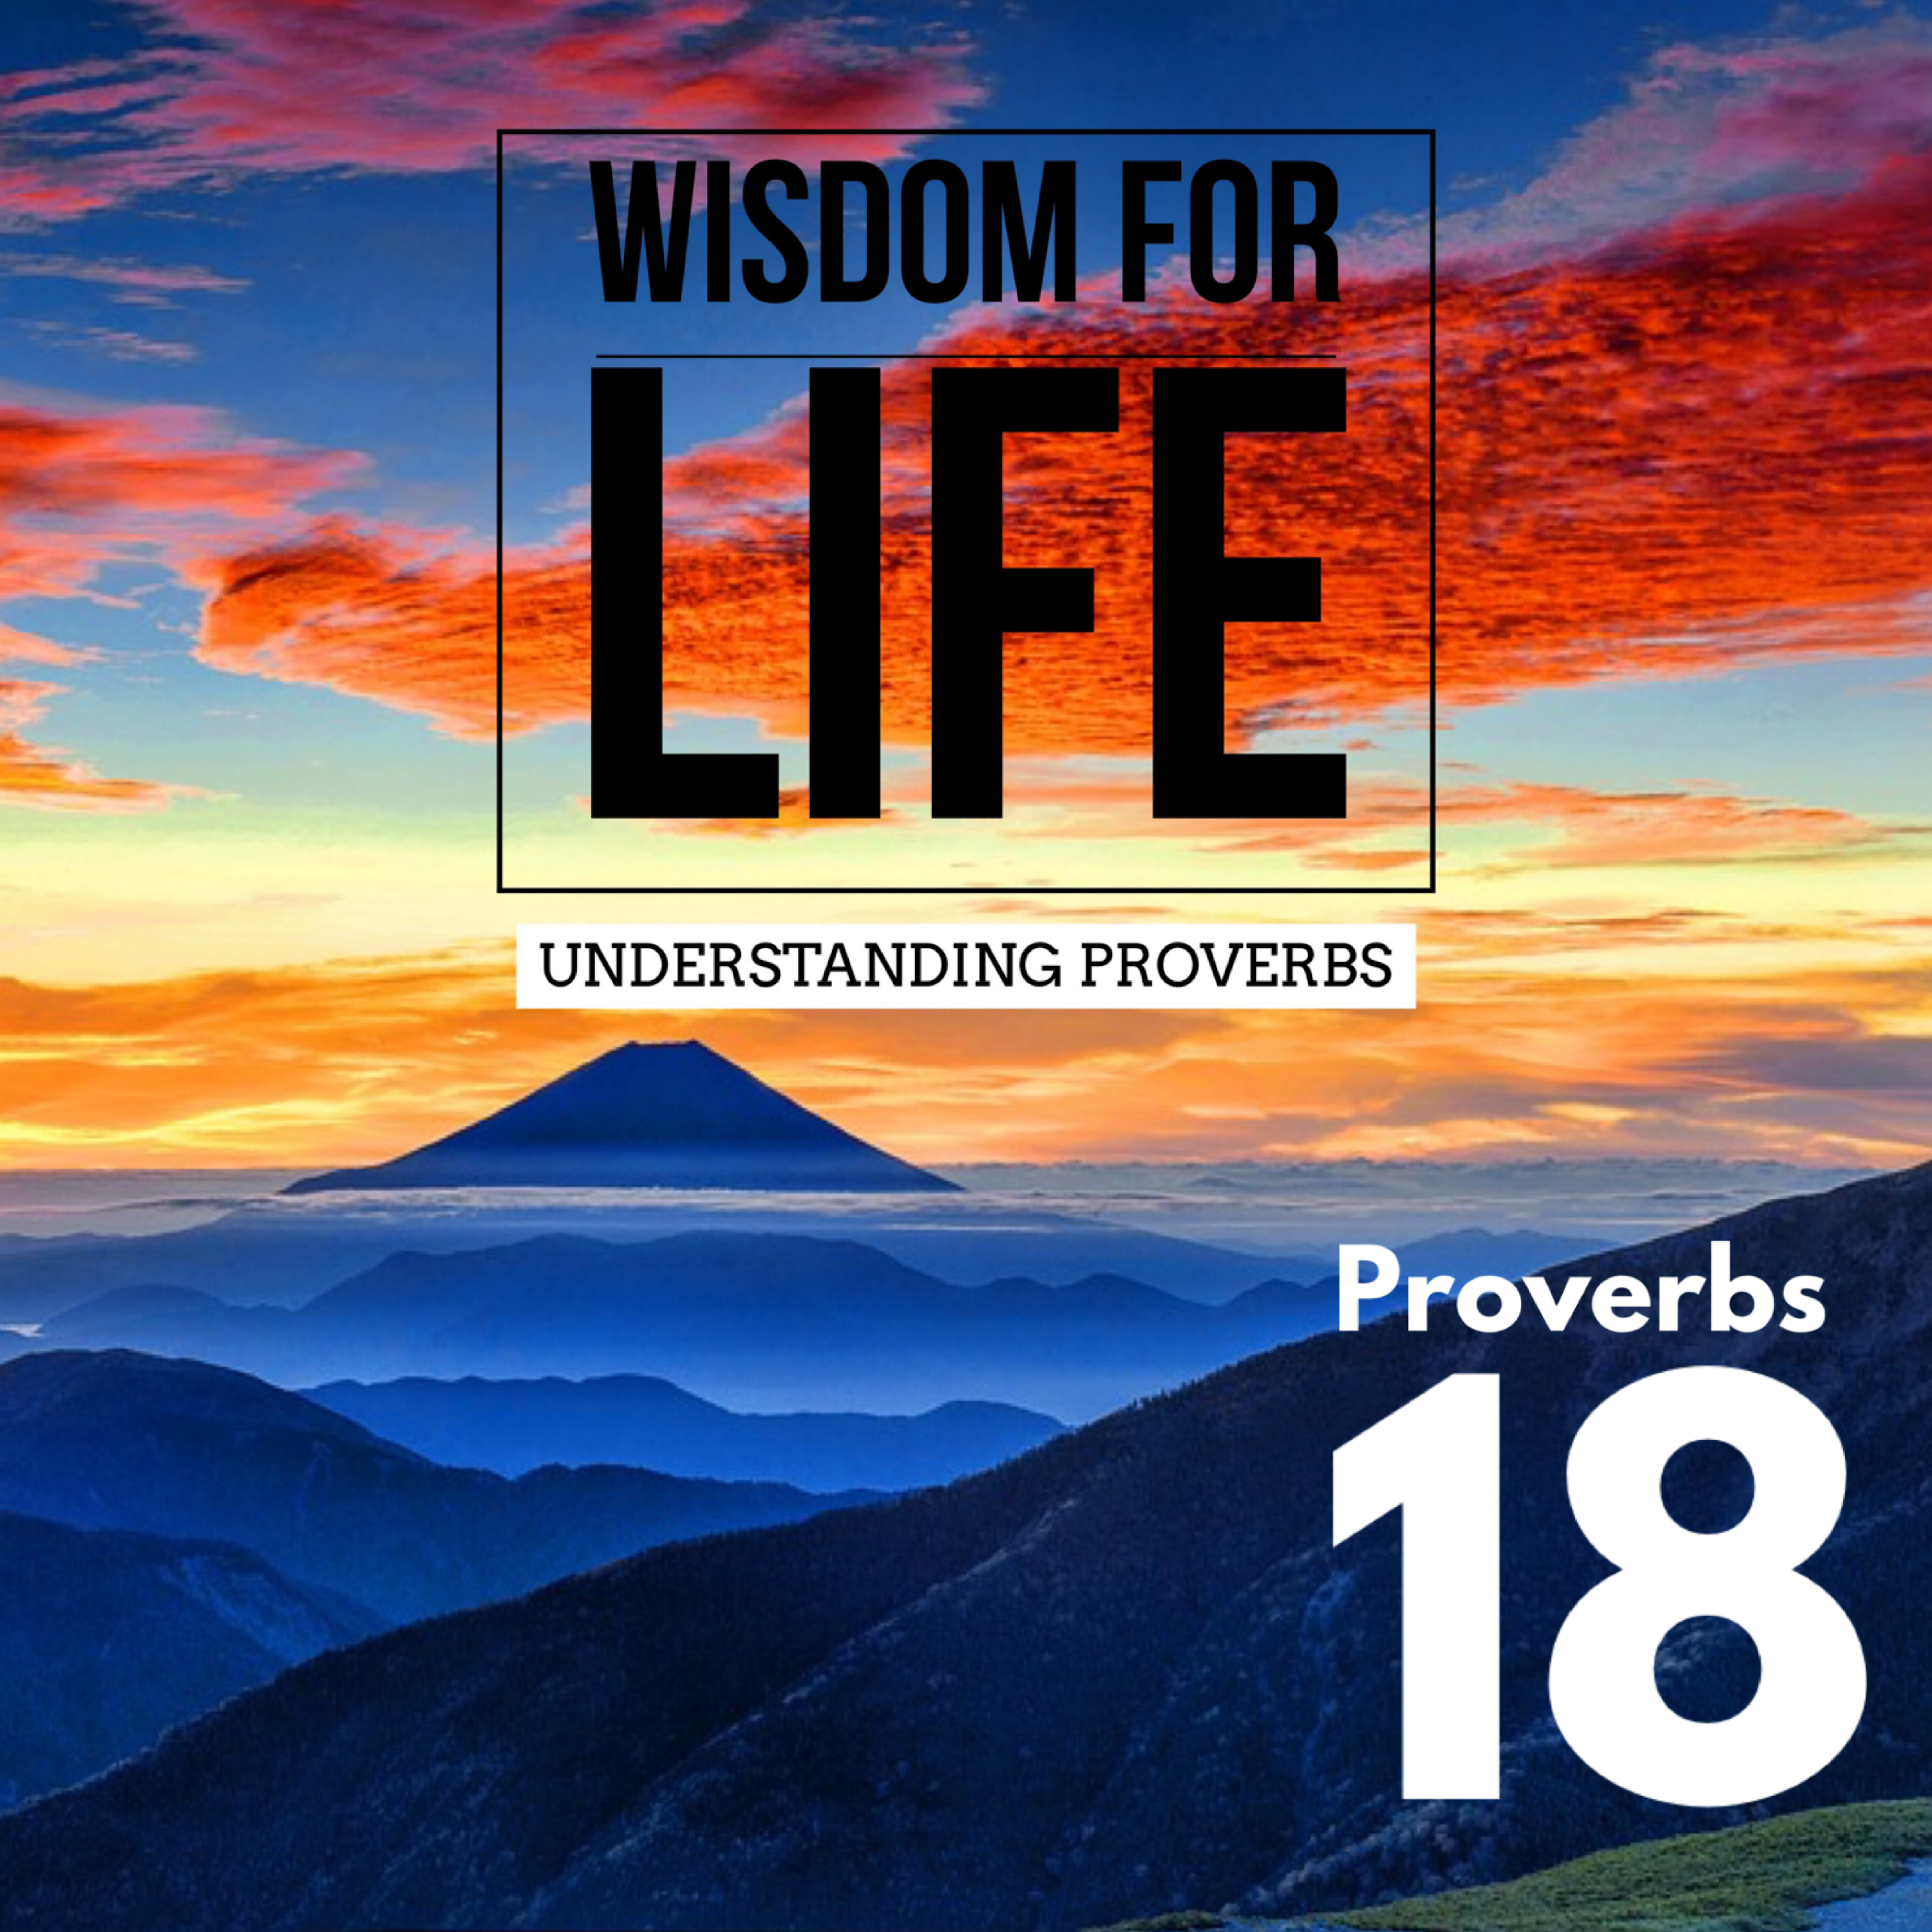 UNDERSTANDING PROVERBS 18